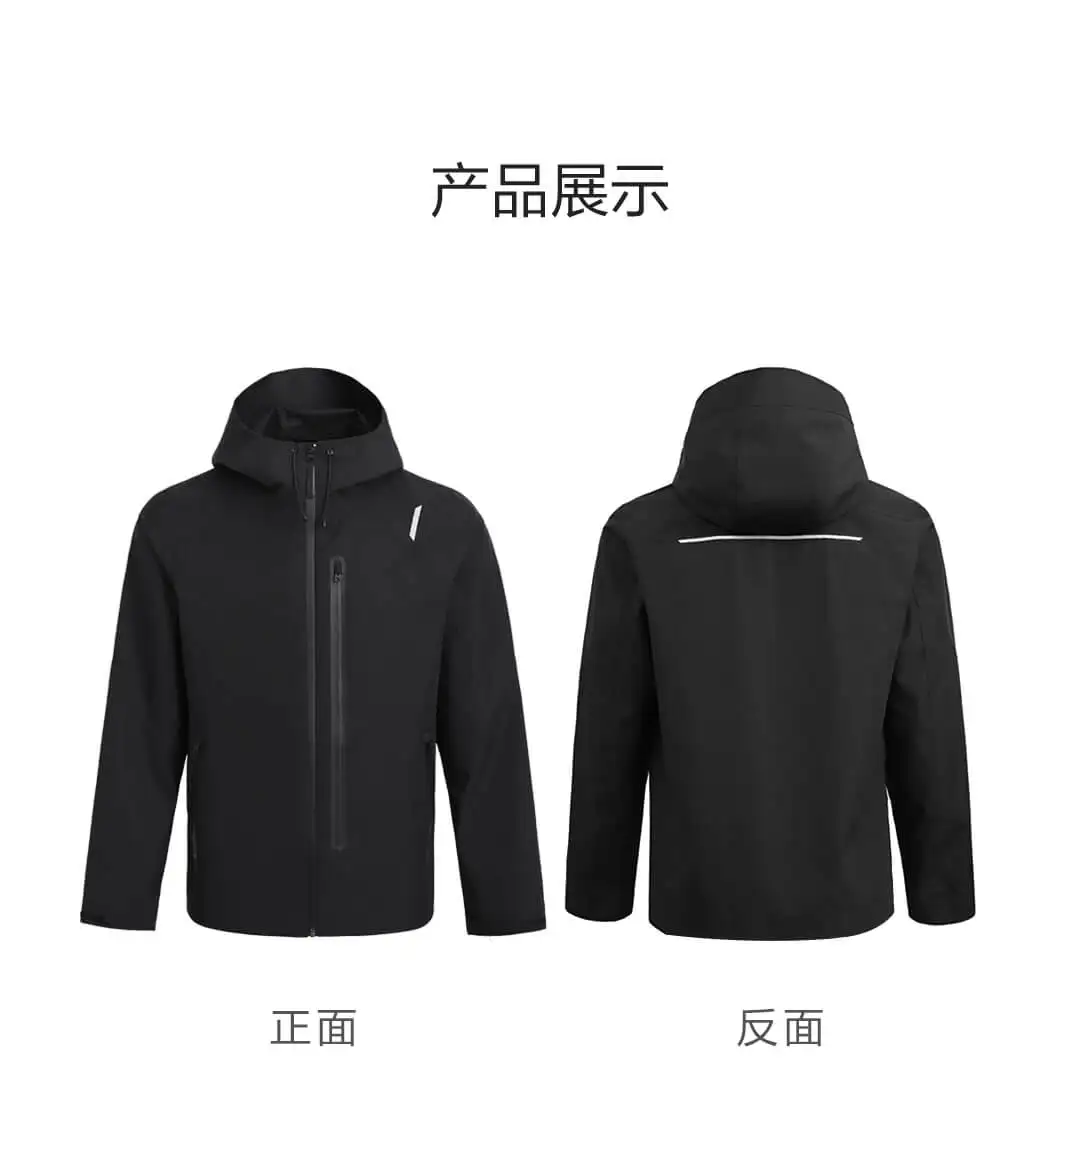 Xiaomi Youpin хлопковая куртка для всех погодных условий, ветрозащитная Водонепроницаемая практичная многофункциональная застежка-молния, держатель для телефона - Цвет: L